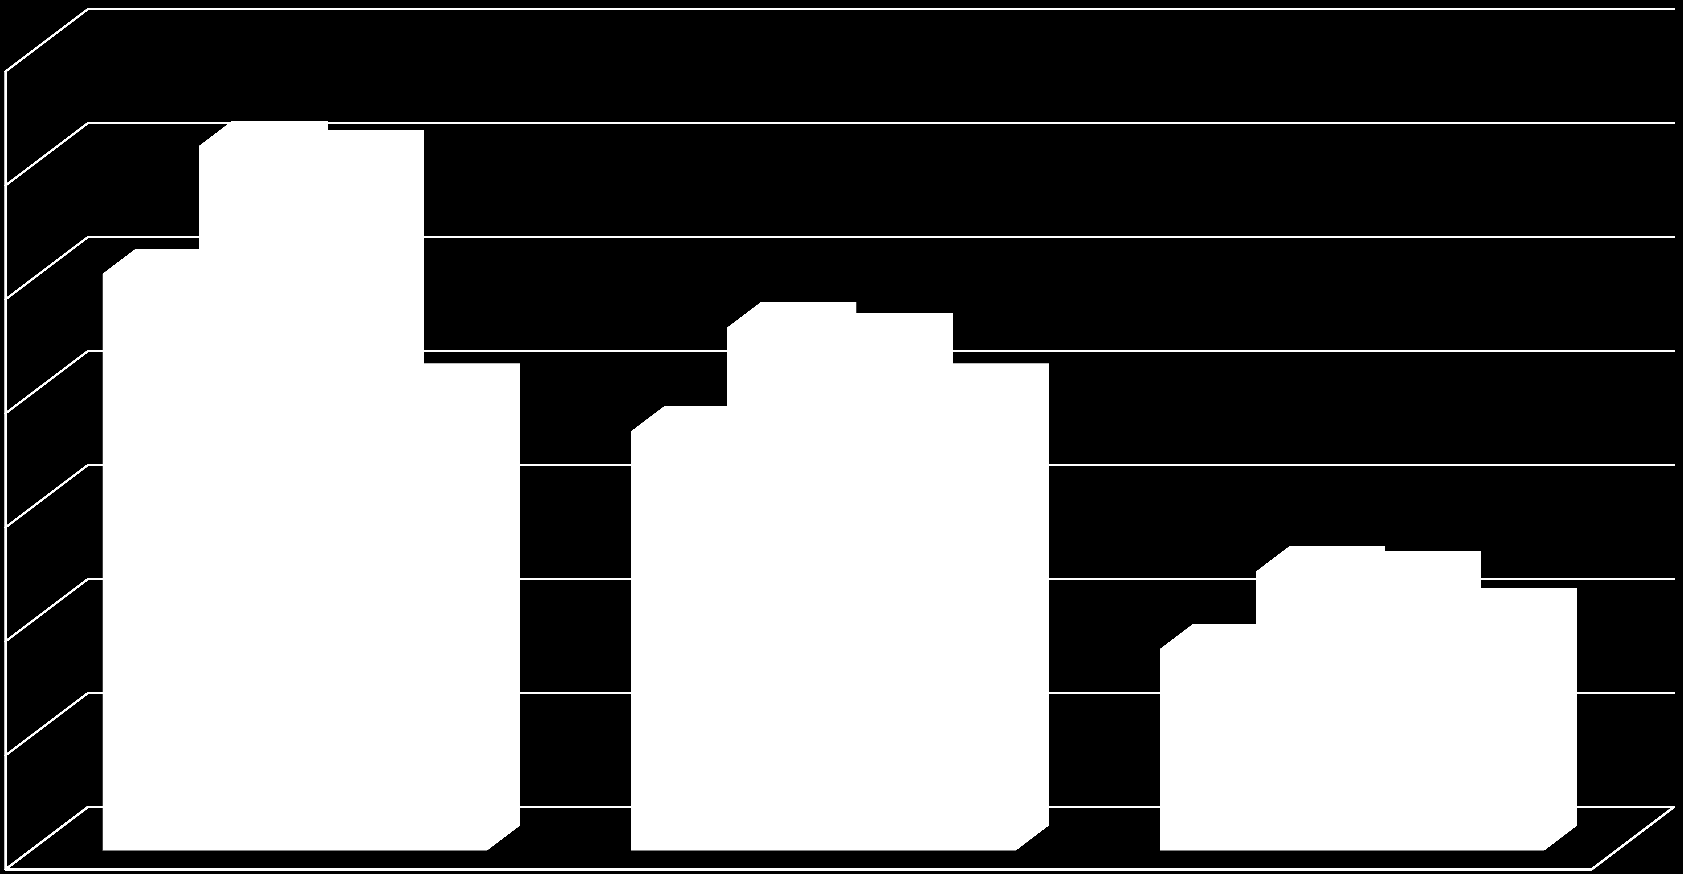 Comparazione Inflazione e CCNL Nominali: dal 1991 al 2011 (valori %) TIP NIC FOI CCNL Nominali 70,0 60,0 50,0 40,0 50,6 61,8 61,0 45,9 45,0